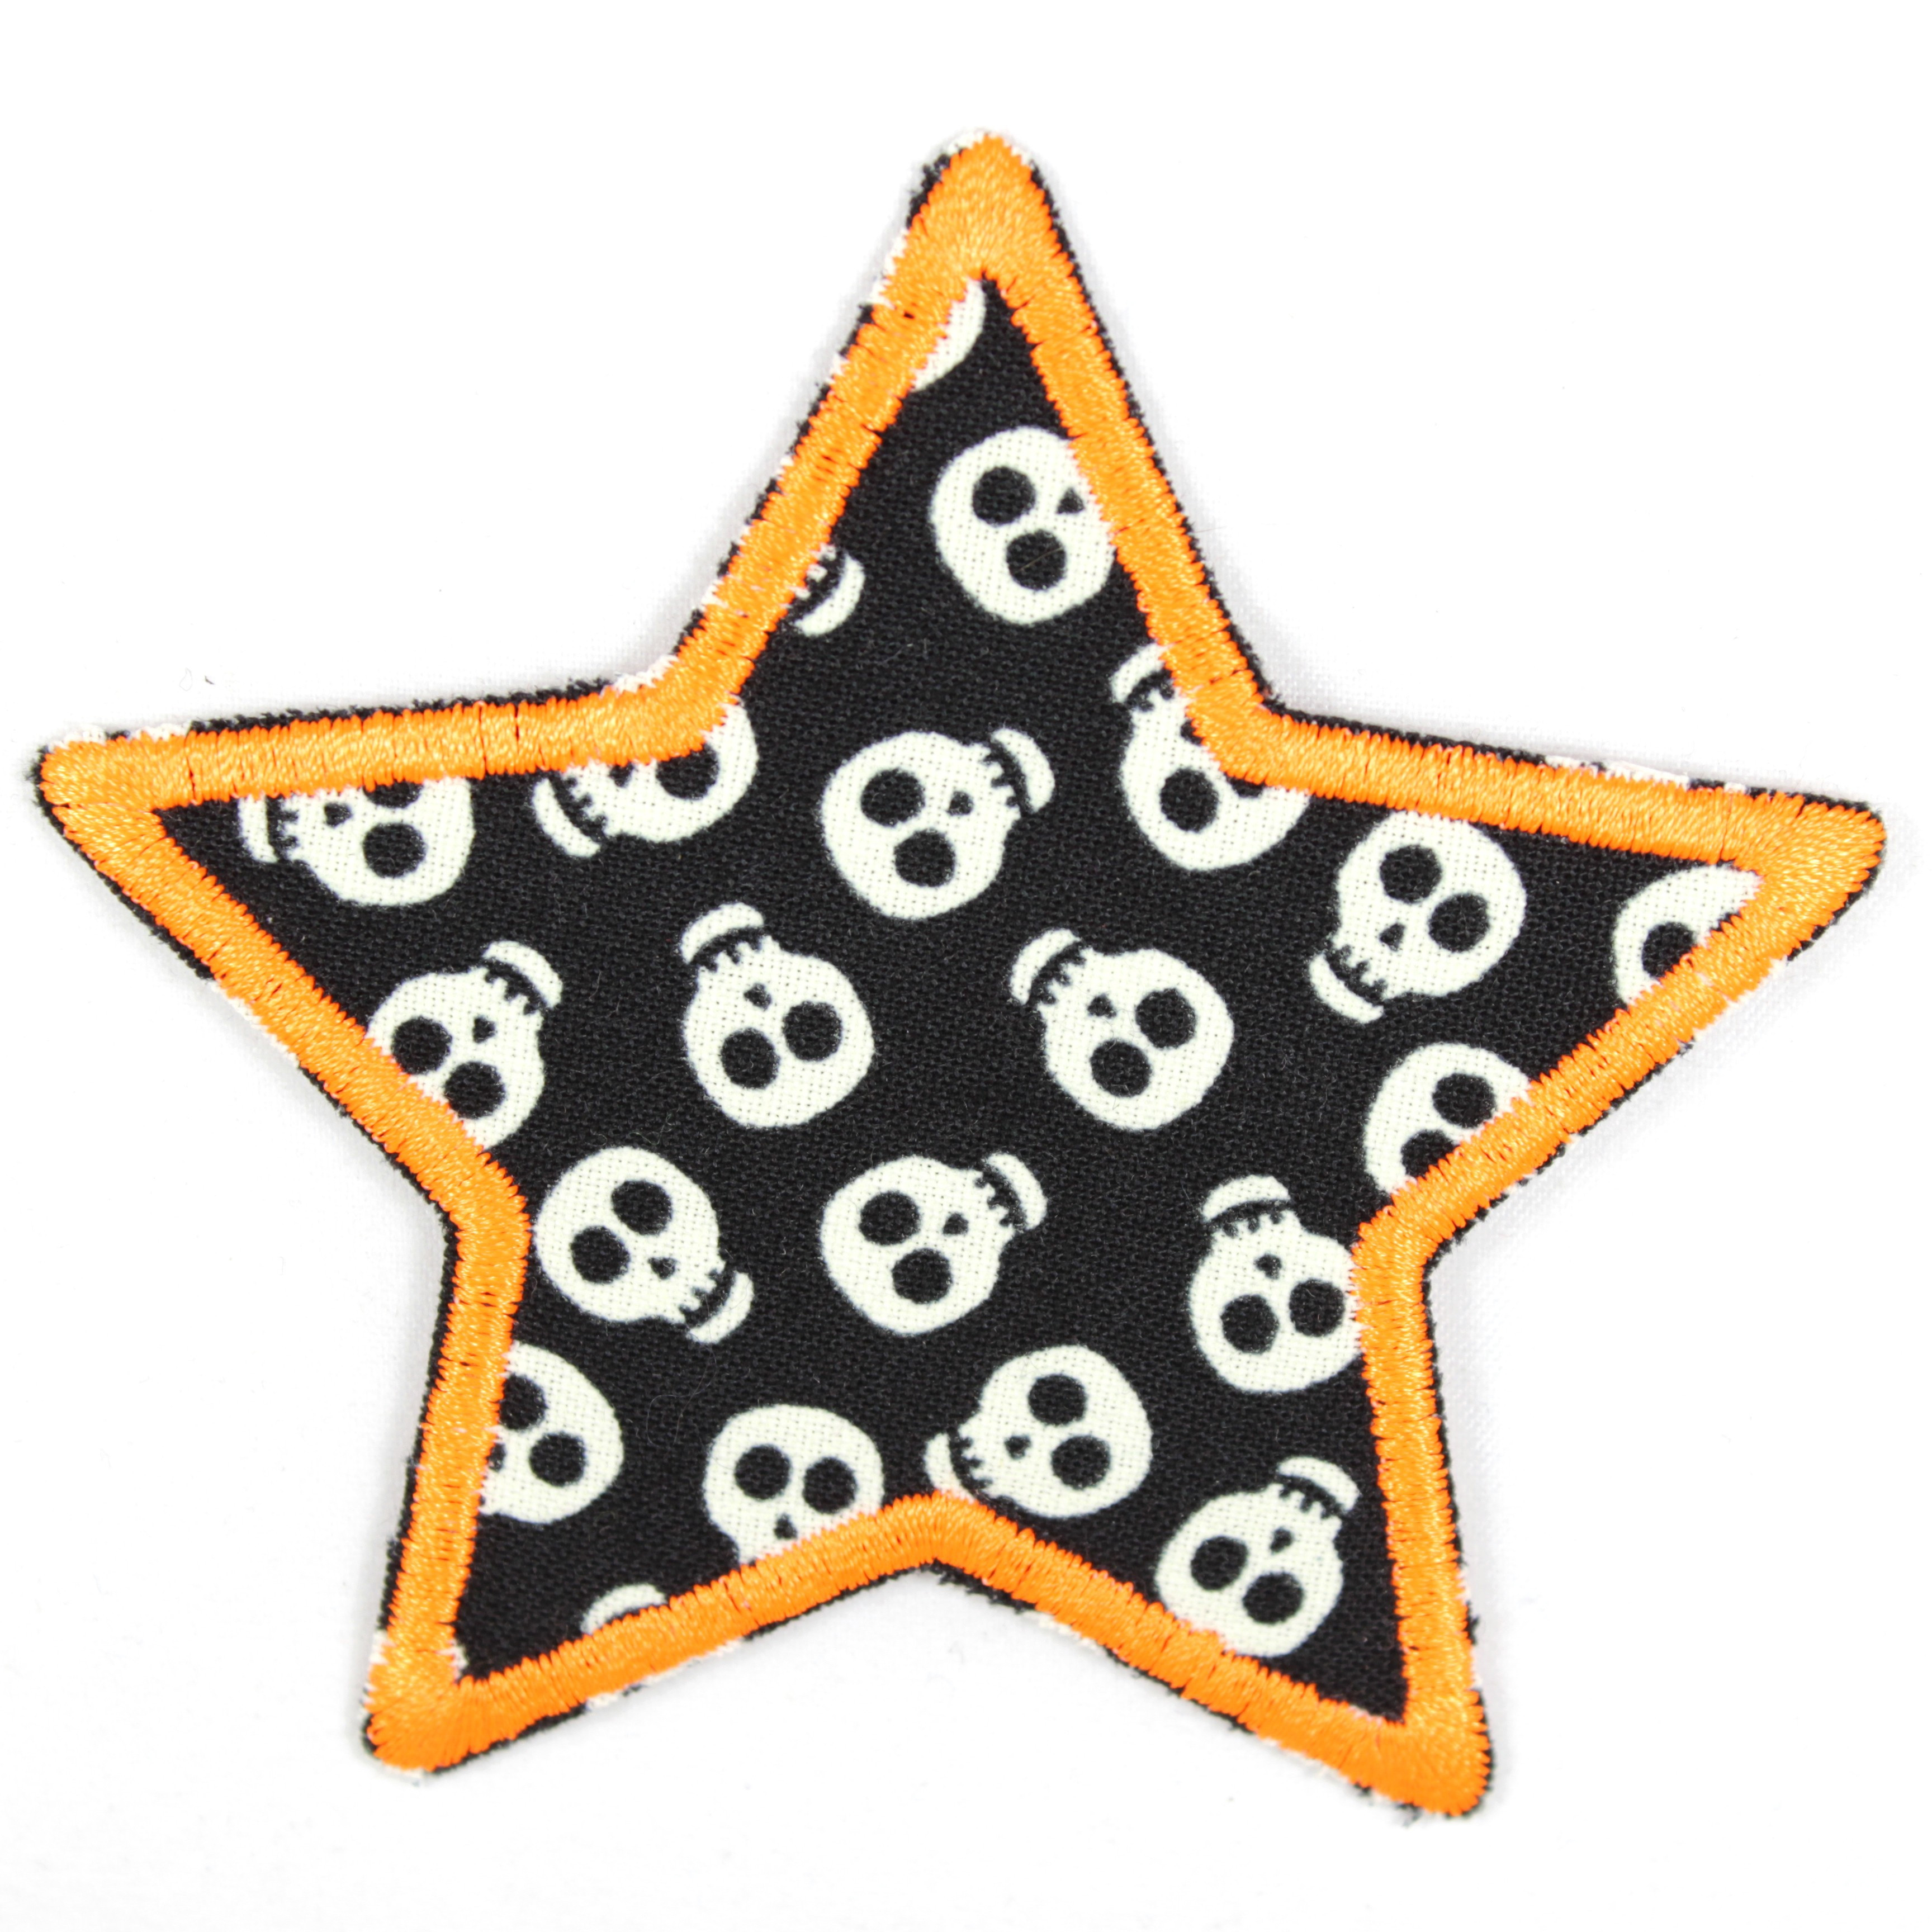 Bügelflicken in Sternform mit kleinen Totenköpfen als Motiv, die im Dunkeln leuchten, und neon oranger Umrandung